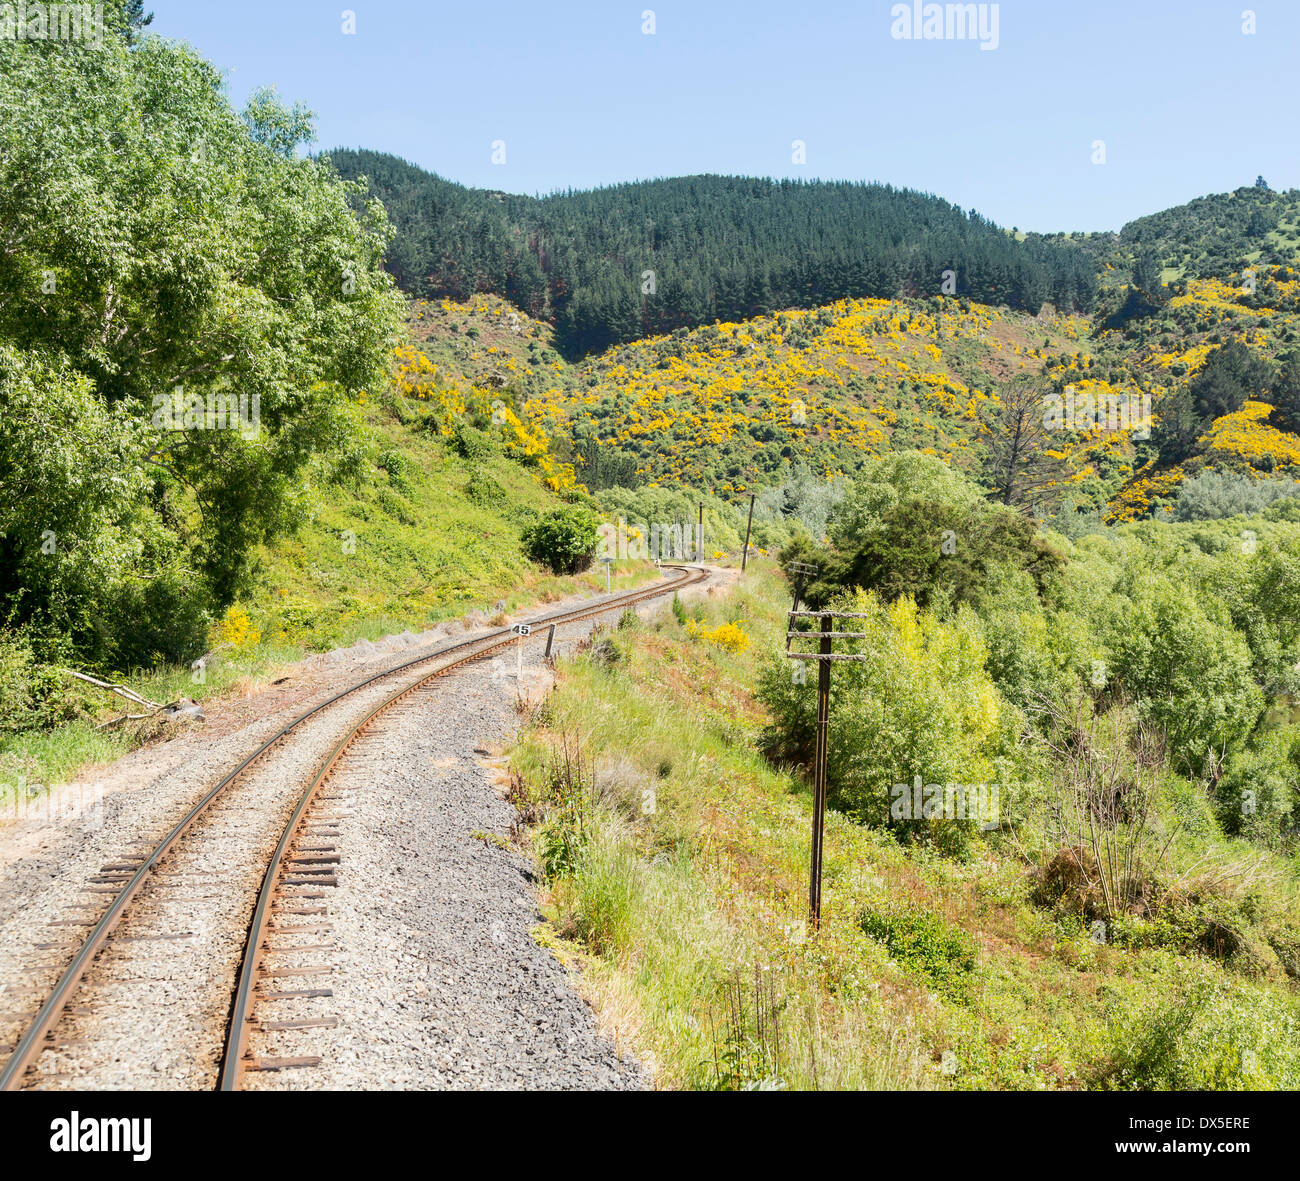 La voie de chemin de fer touristique Taieri Gorge courbes de piste à travers la forêt sur son voyage en haut de la vallée, Nouvelle-Zélande Banque D'Images